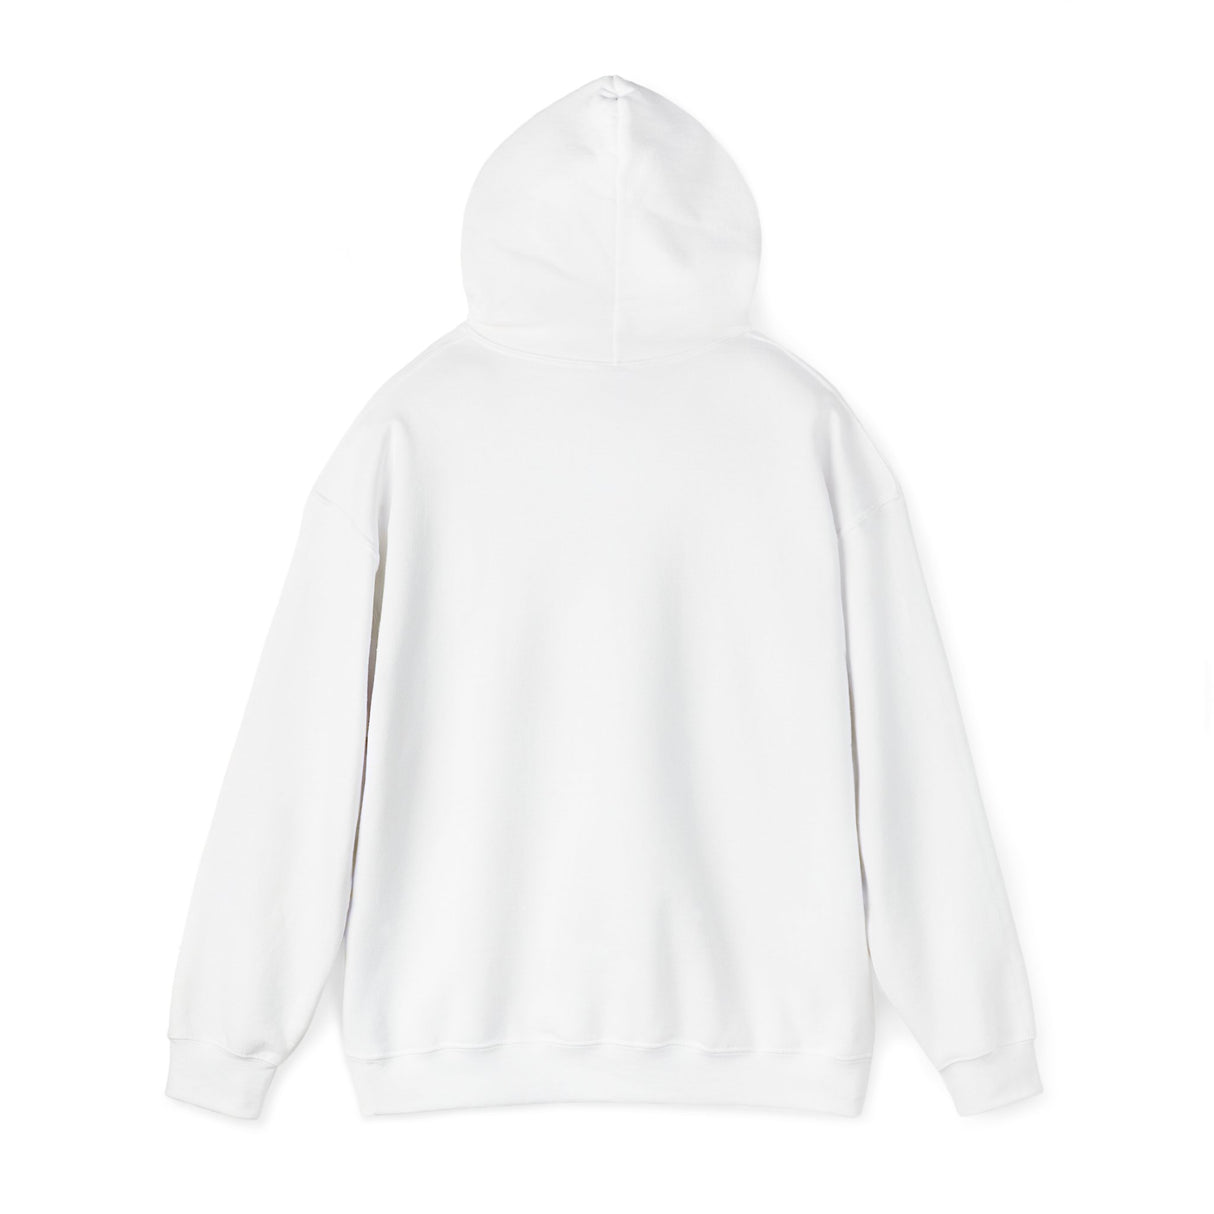 Duck fiabetes - Unisex Heavy Blend™ Hooded Sweatshirt